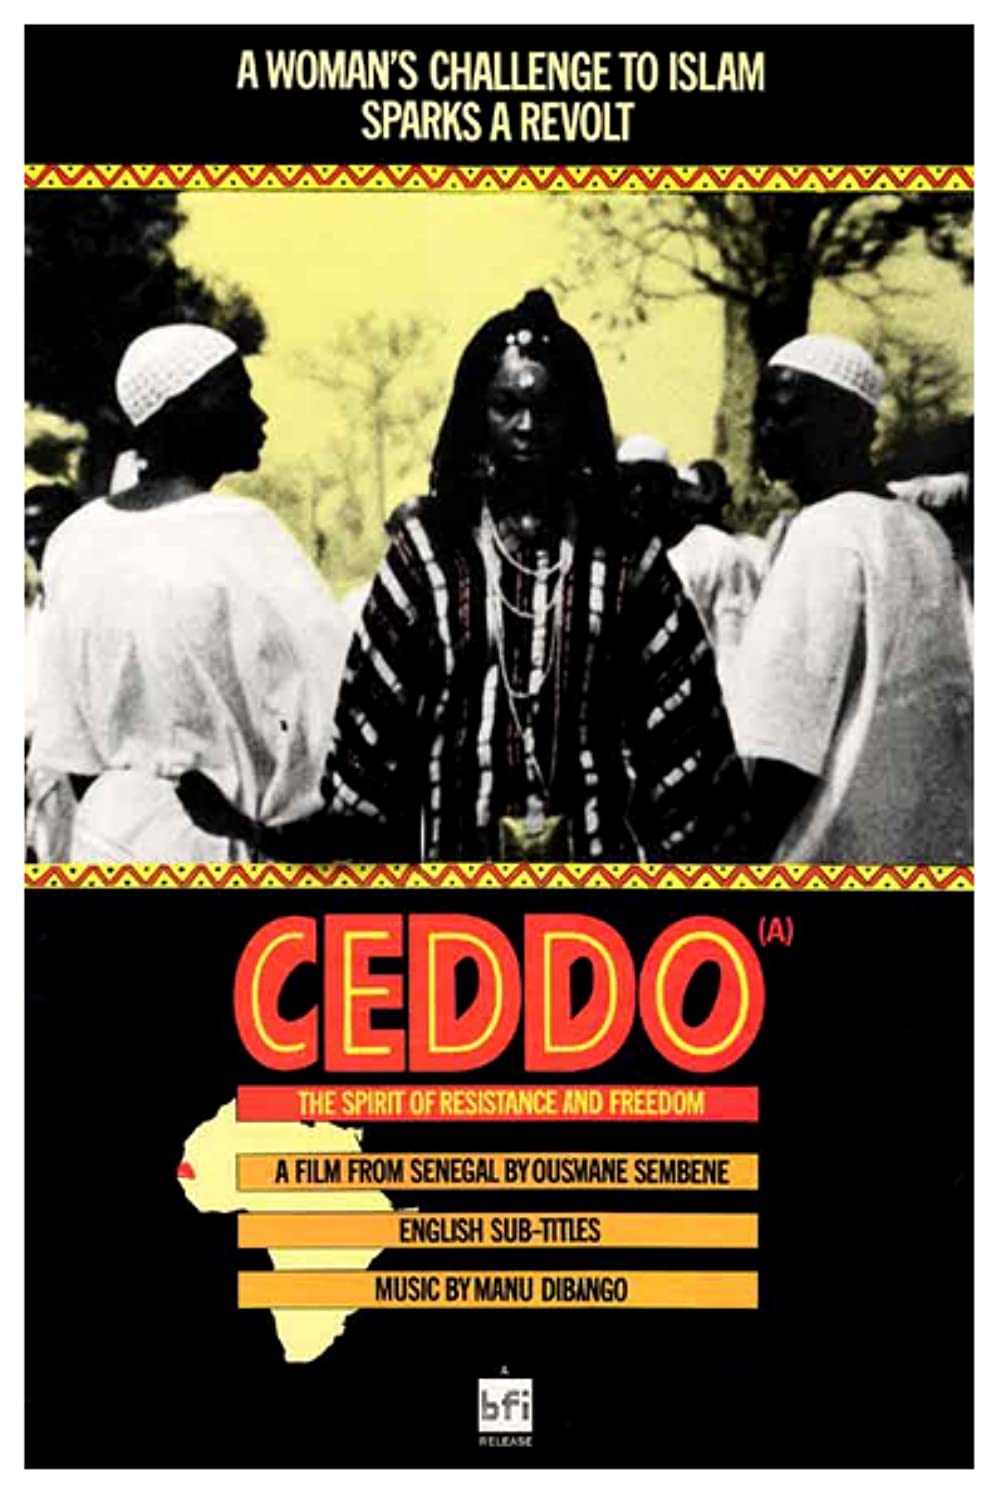 "Ceddo" (1977)